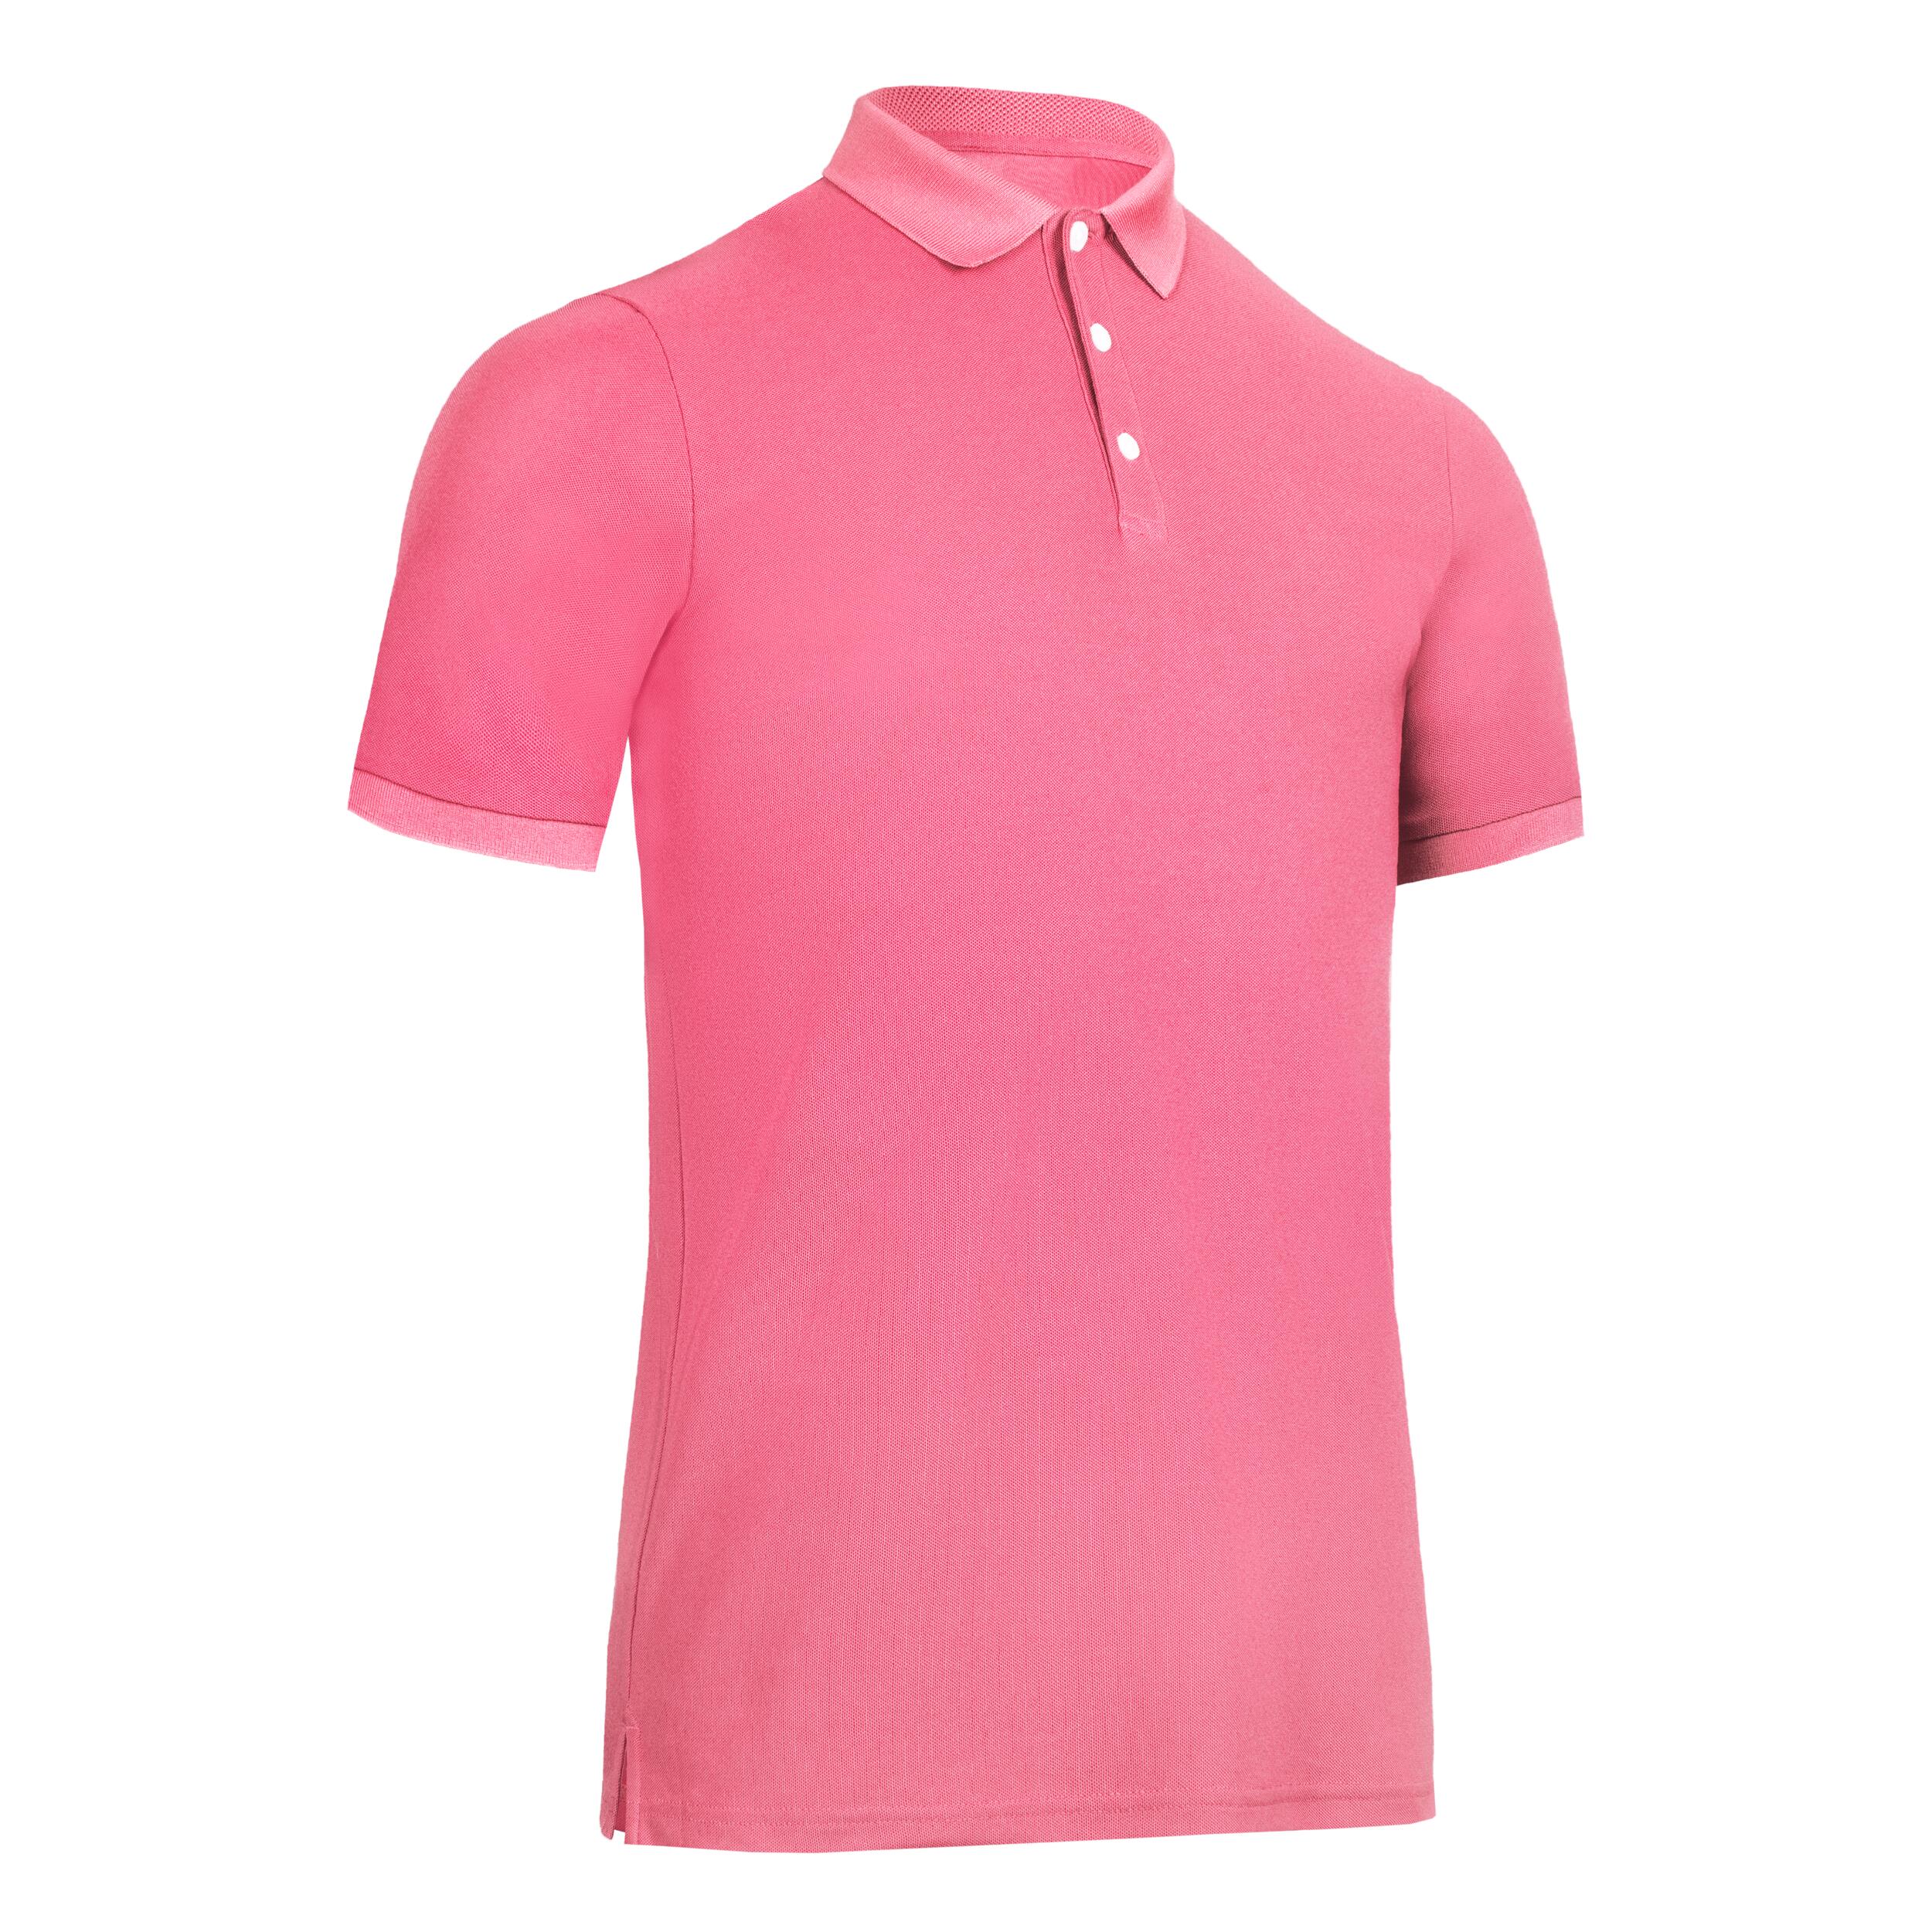 Men's golf short sleeve polo shirt - WW500 pink 6/6